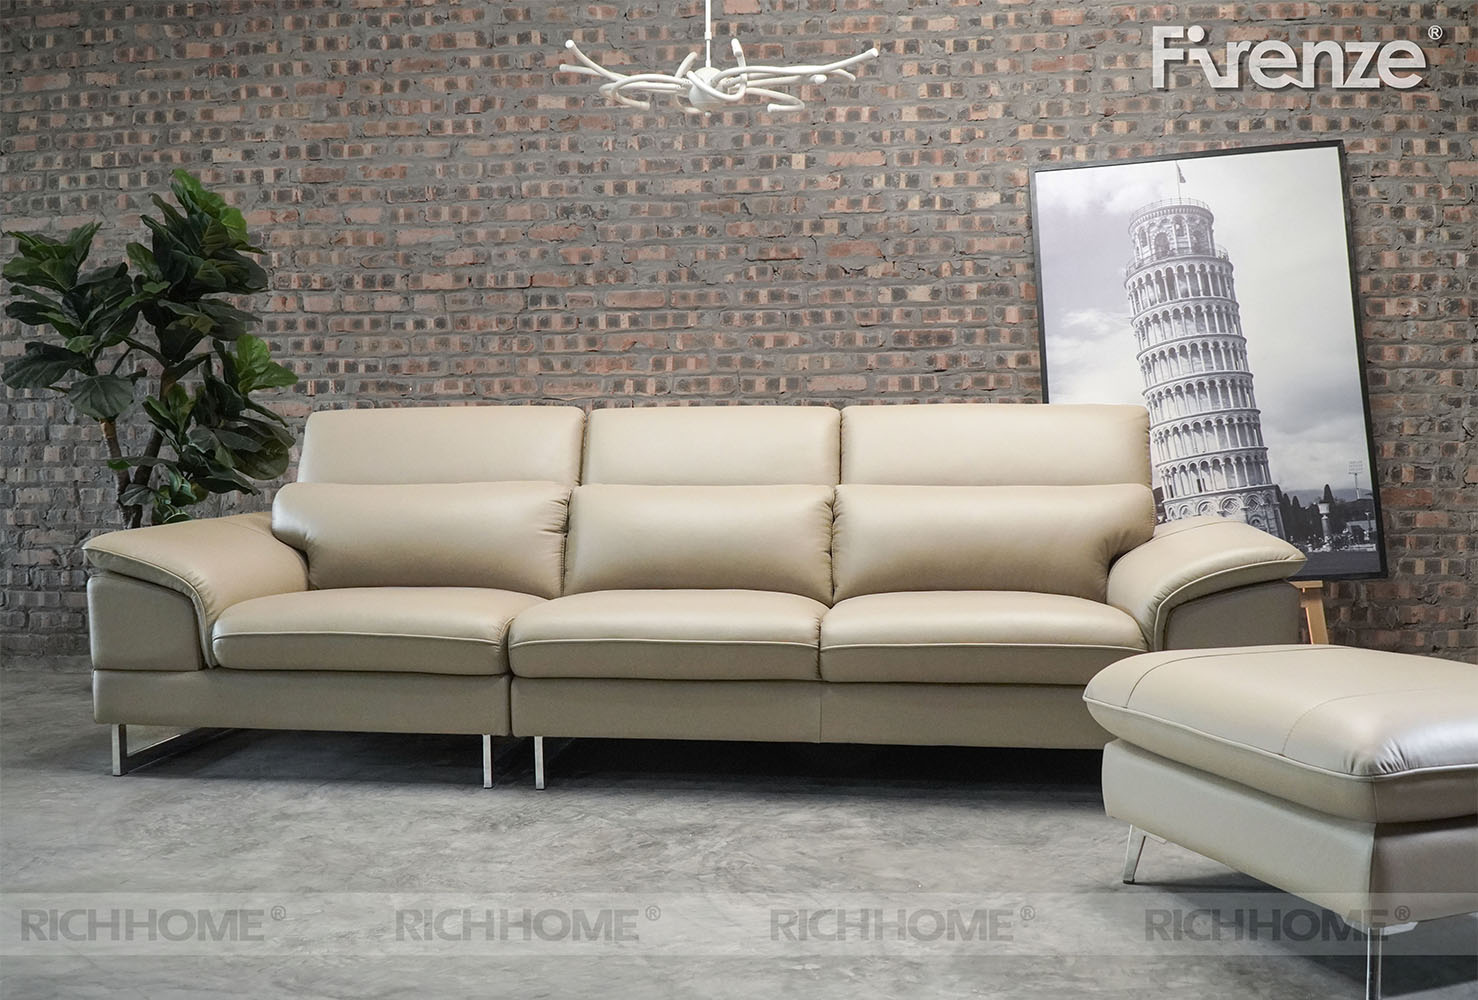 Tổng hợp các mẫu sofa nhập khẩu với nhiều kiểu dáng khác nhau - Ảnh 5